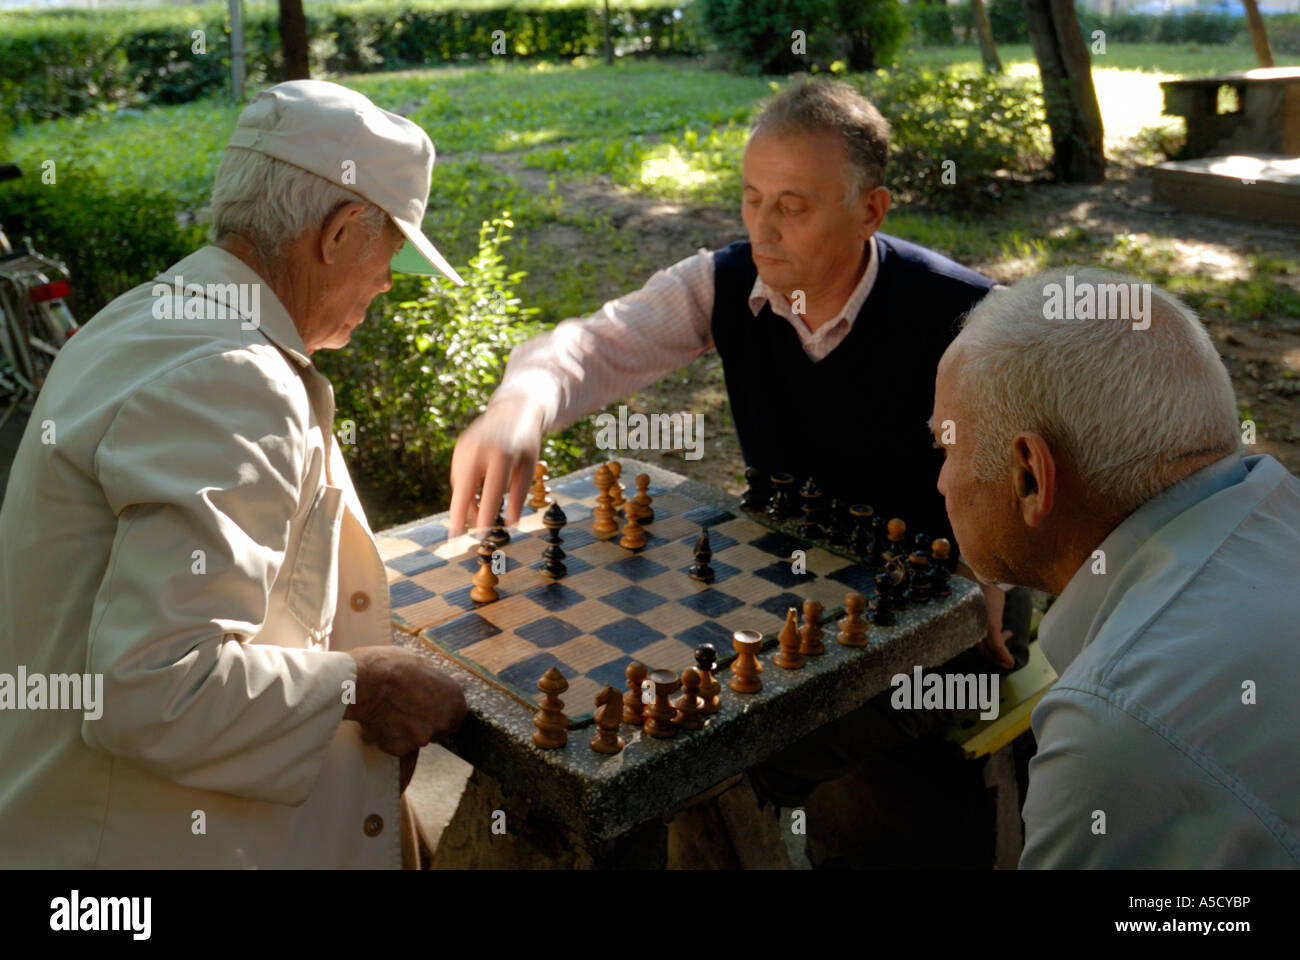 Roumanie Sibiu. Capitale européenne de la Culture 2007. Joueurs d'échecs dans ASTRA park Banque D'Images